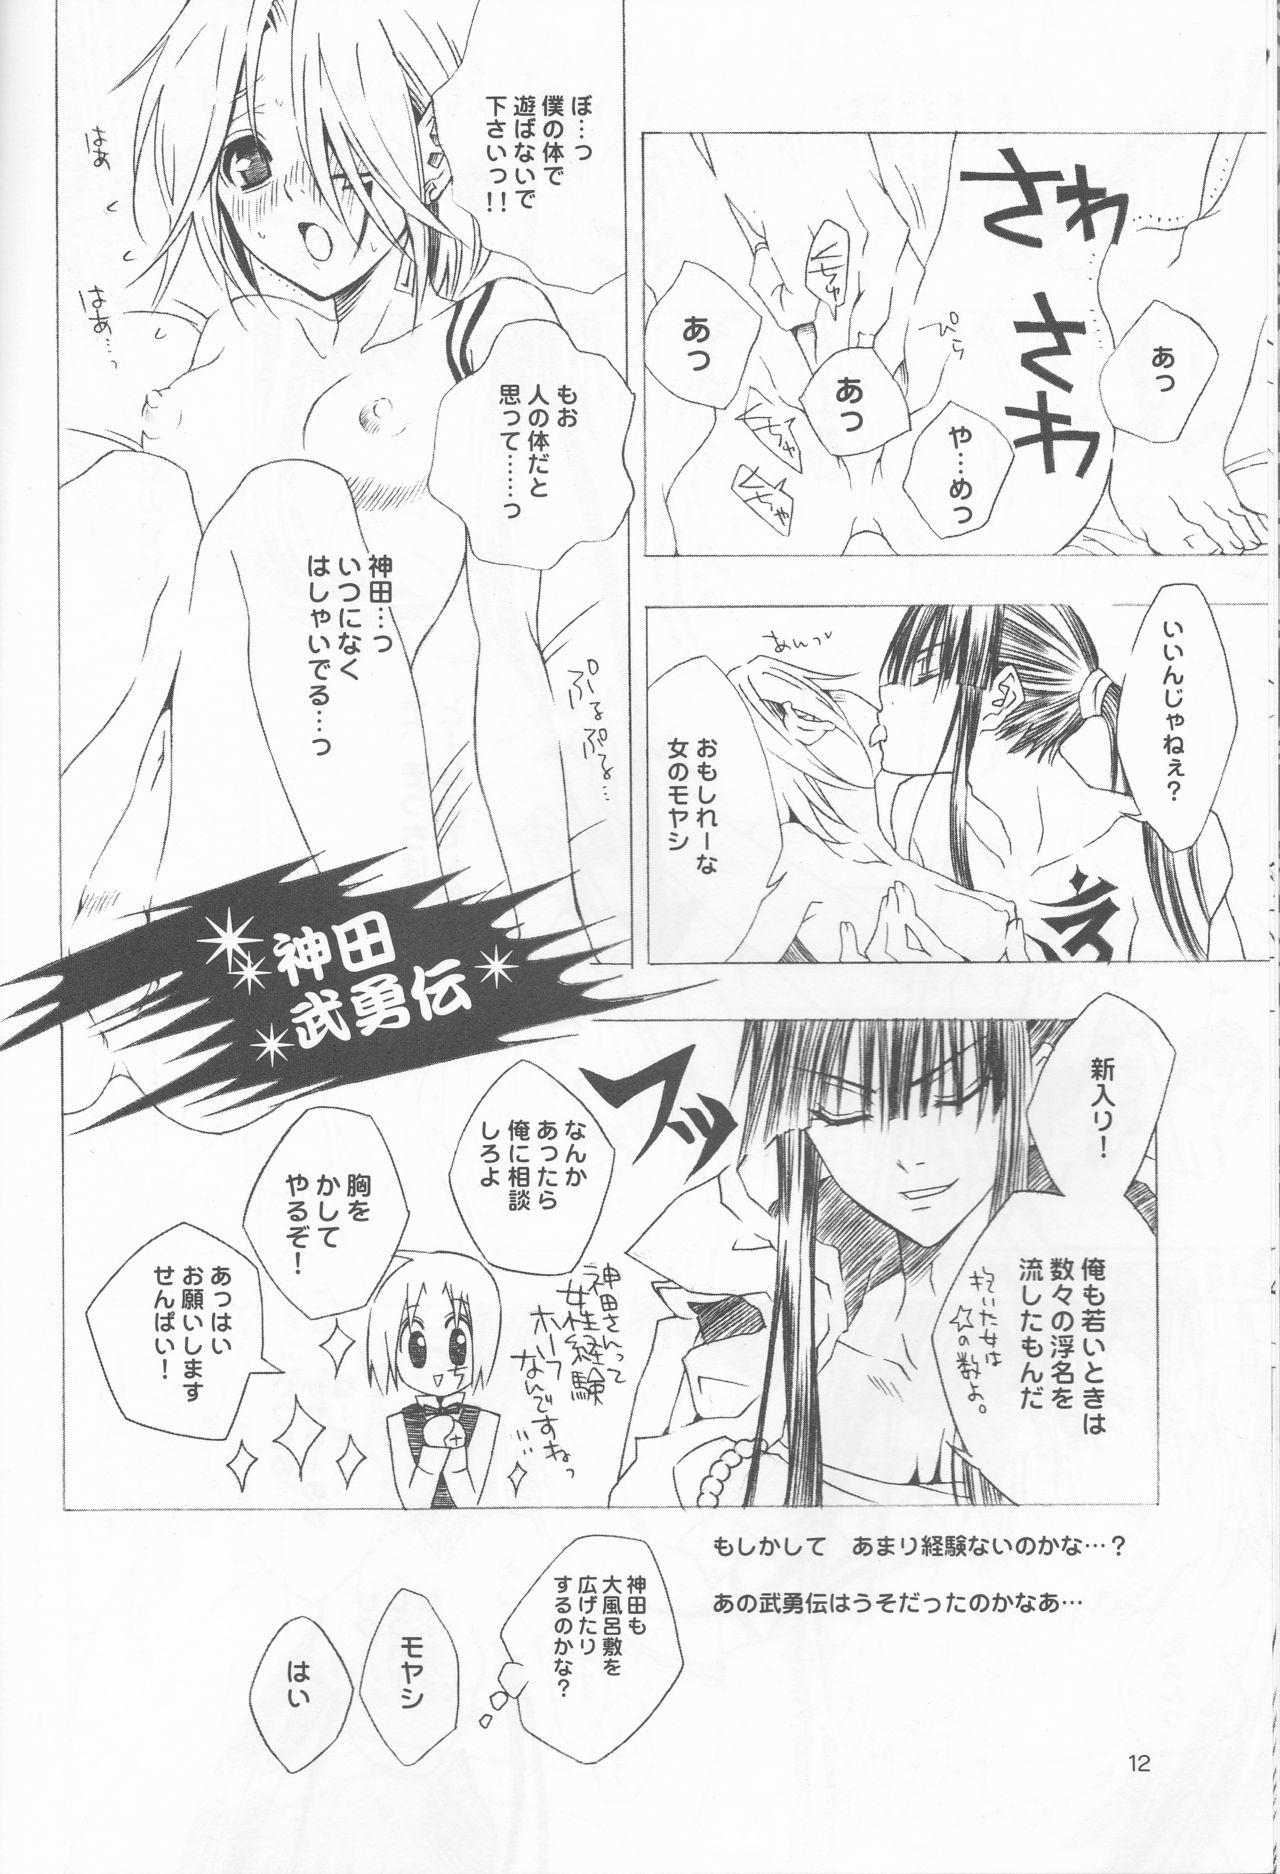 Ass Sex Kami Are Gekijou OFFLINE 17 - D.gray-man Chunky - Page 11